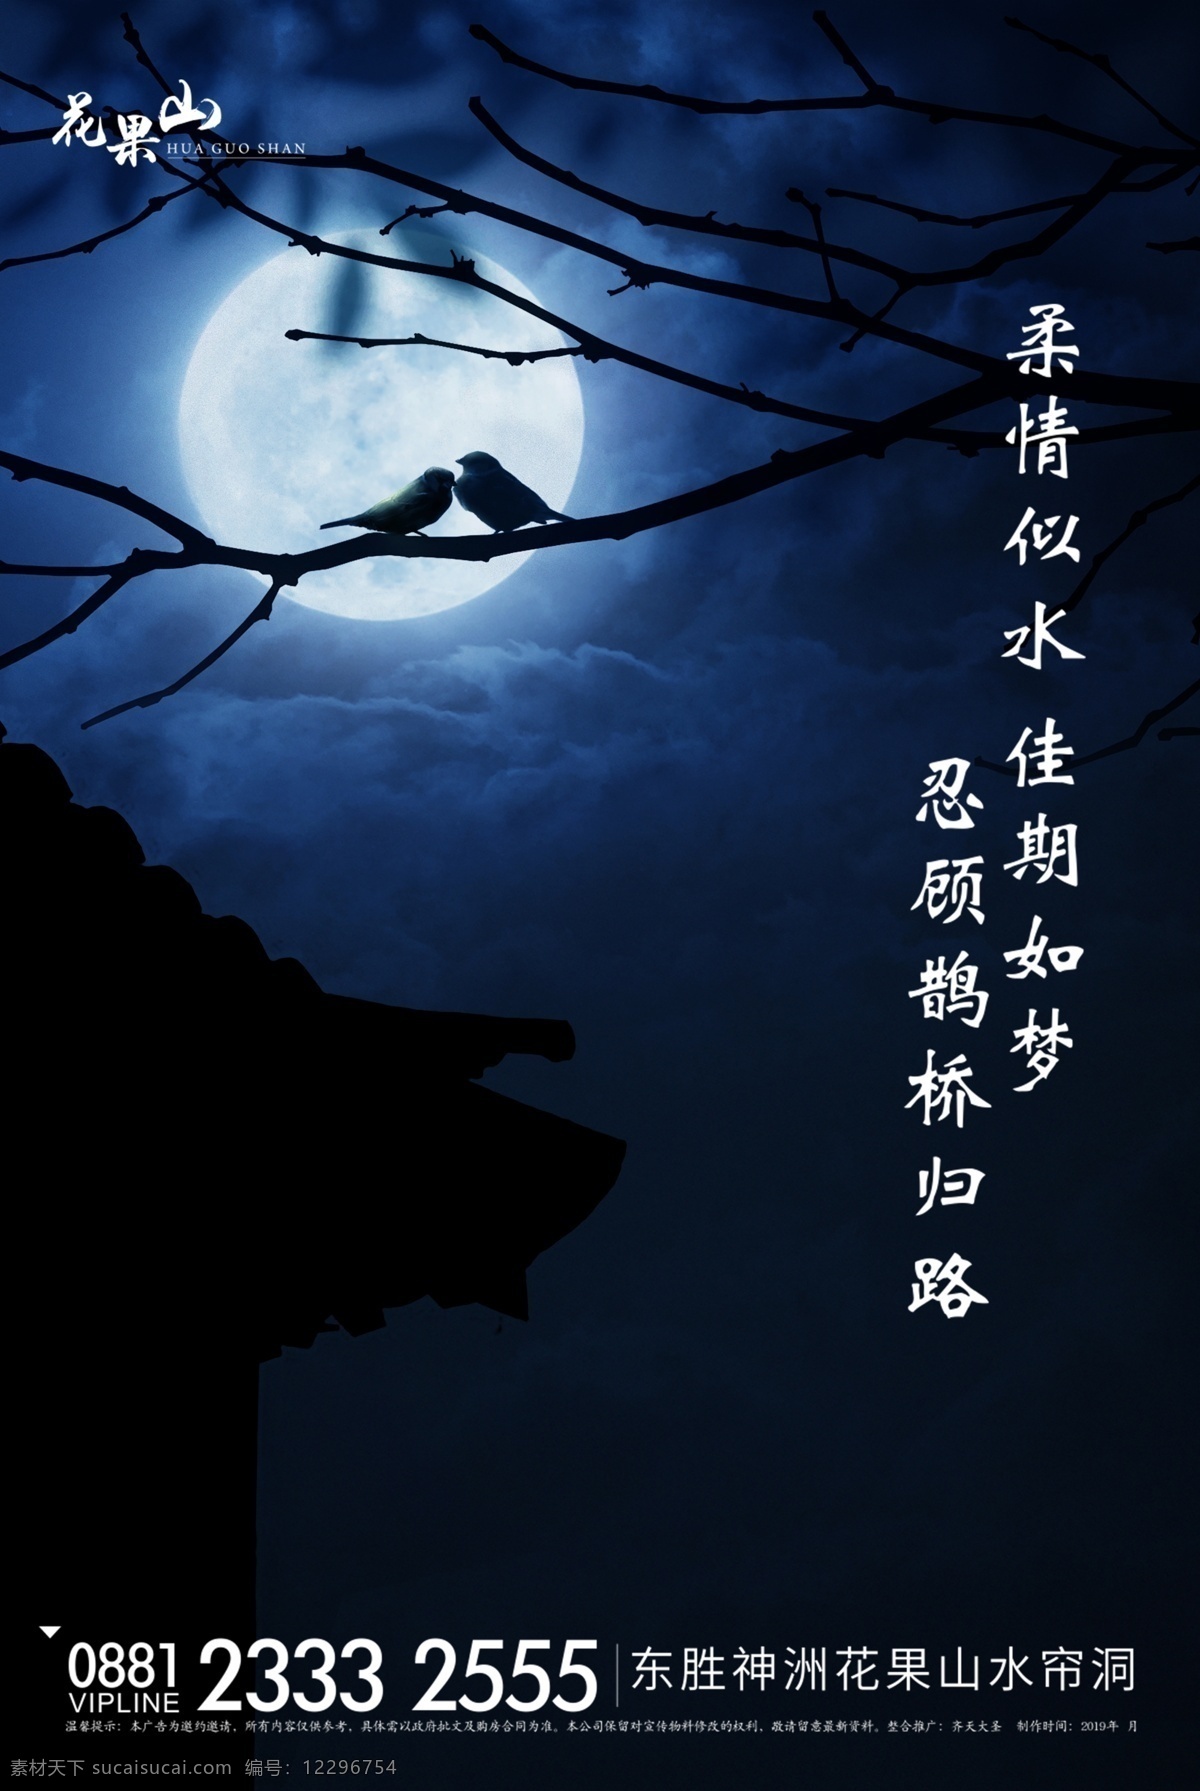 七夕 喜鹊 新中式 夜晚 月亮 中式 夜景 地产微信稿 微信单图 节气稿